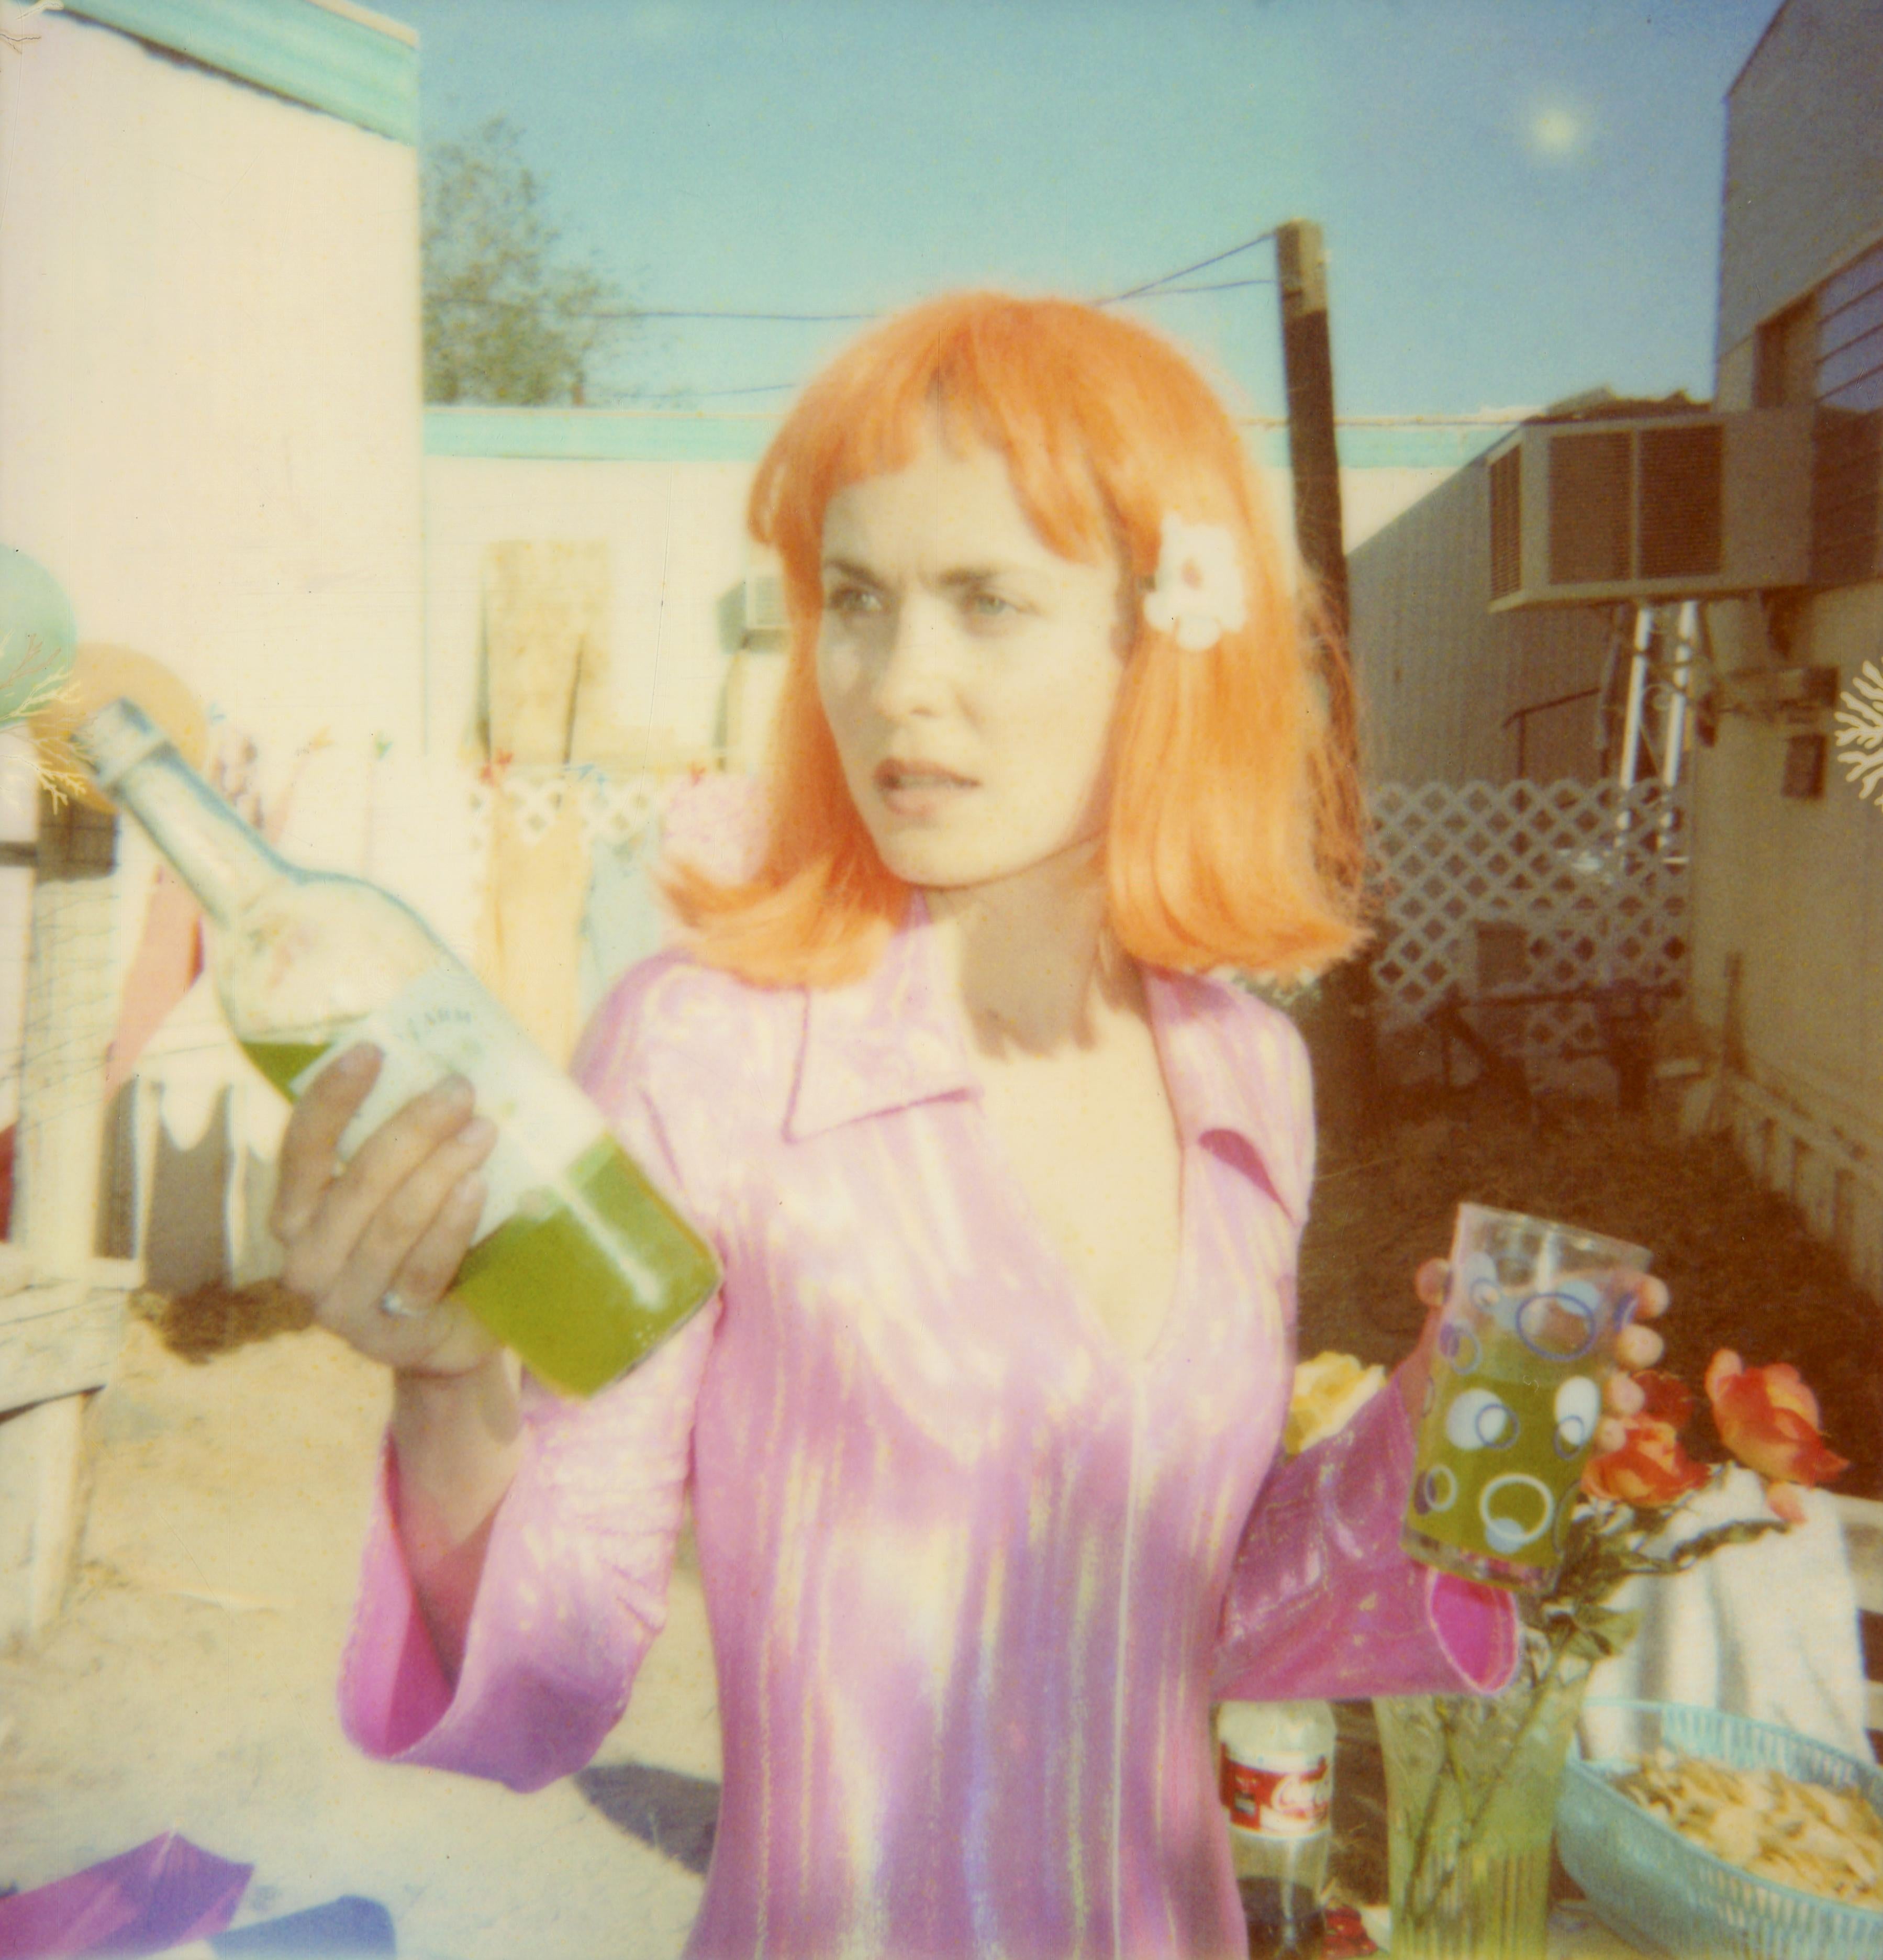 Stefanie Schneider Color Photograph - American Pie (Oxana's 30th Birthday) starring Radha Mitchell - Polaroid